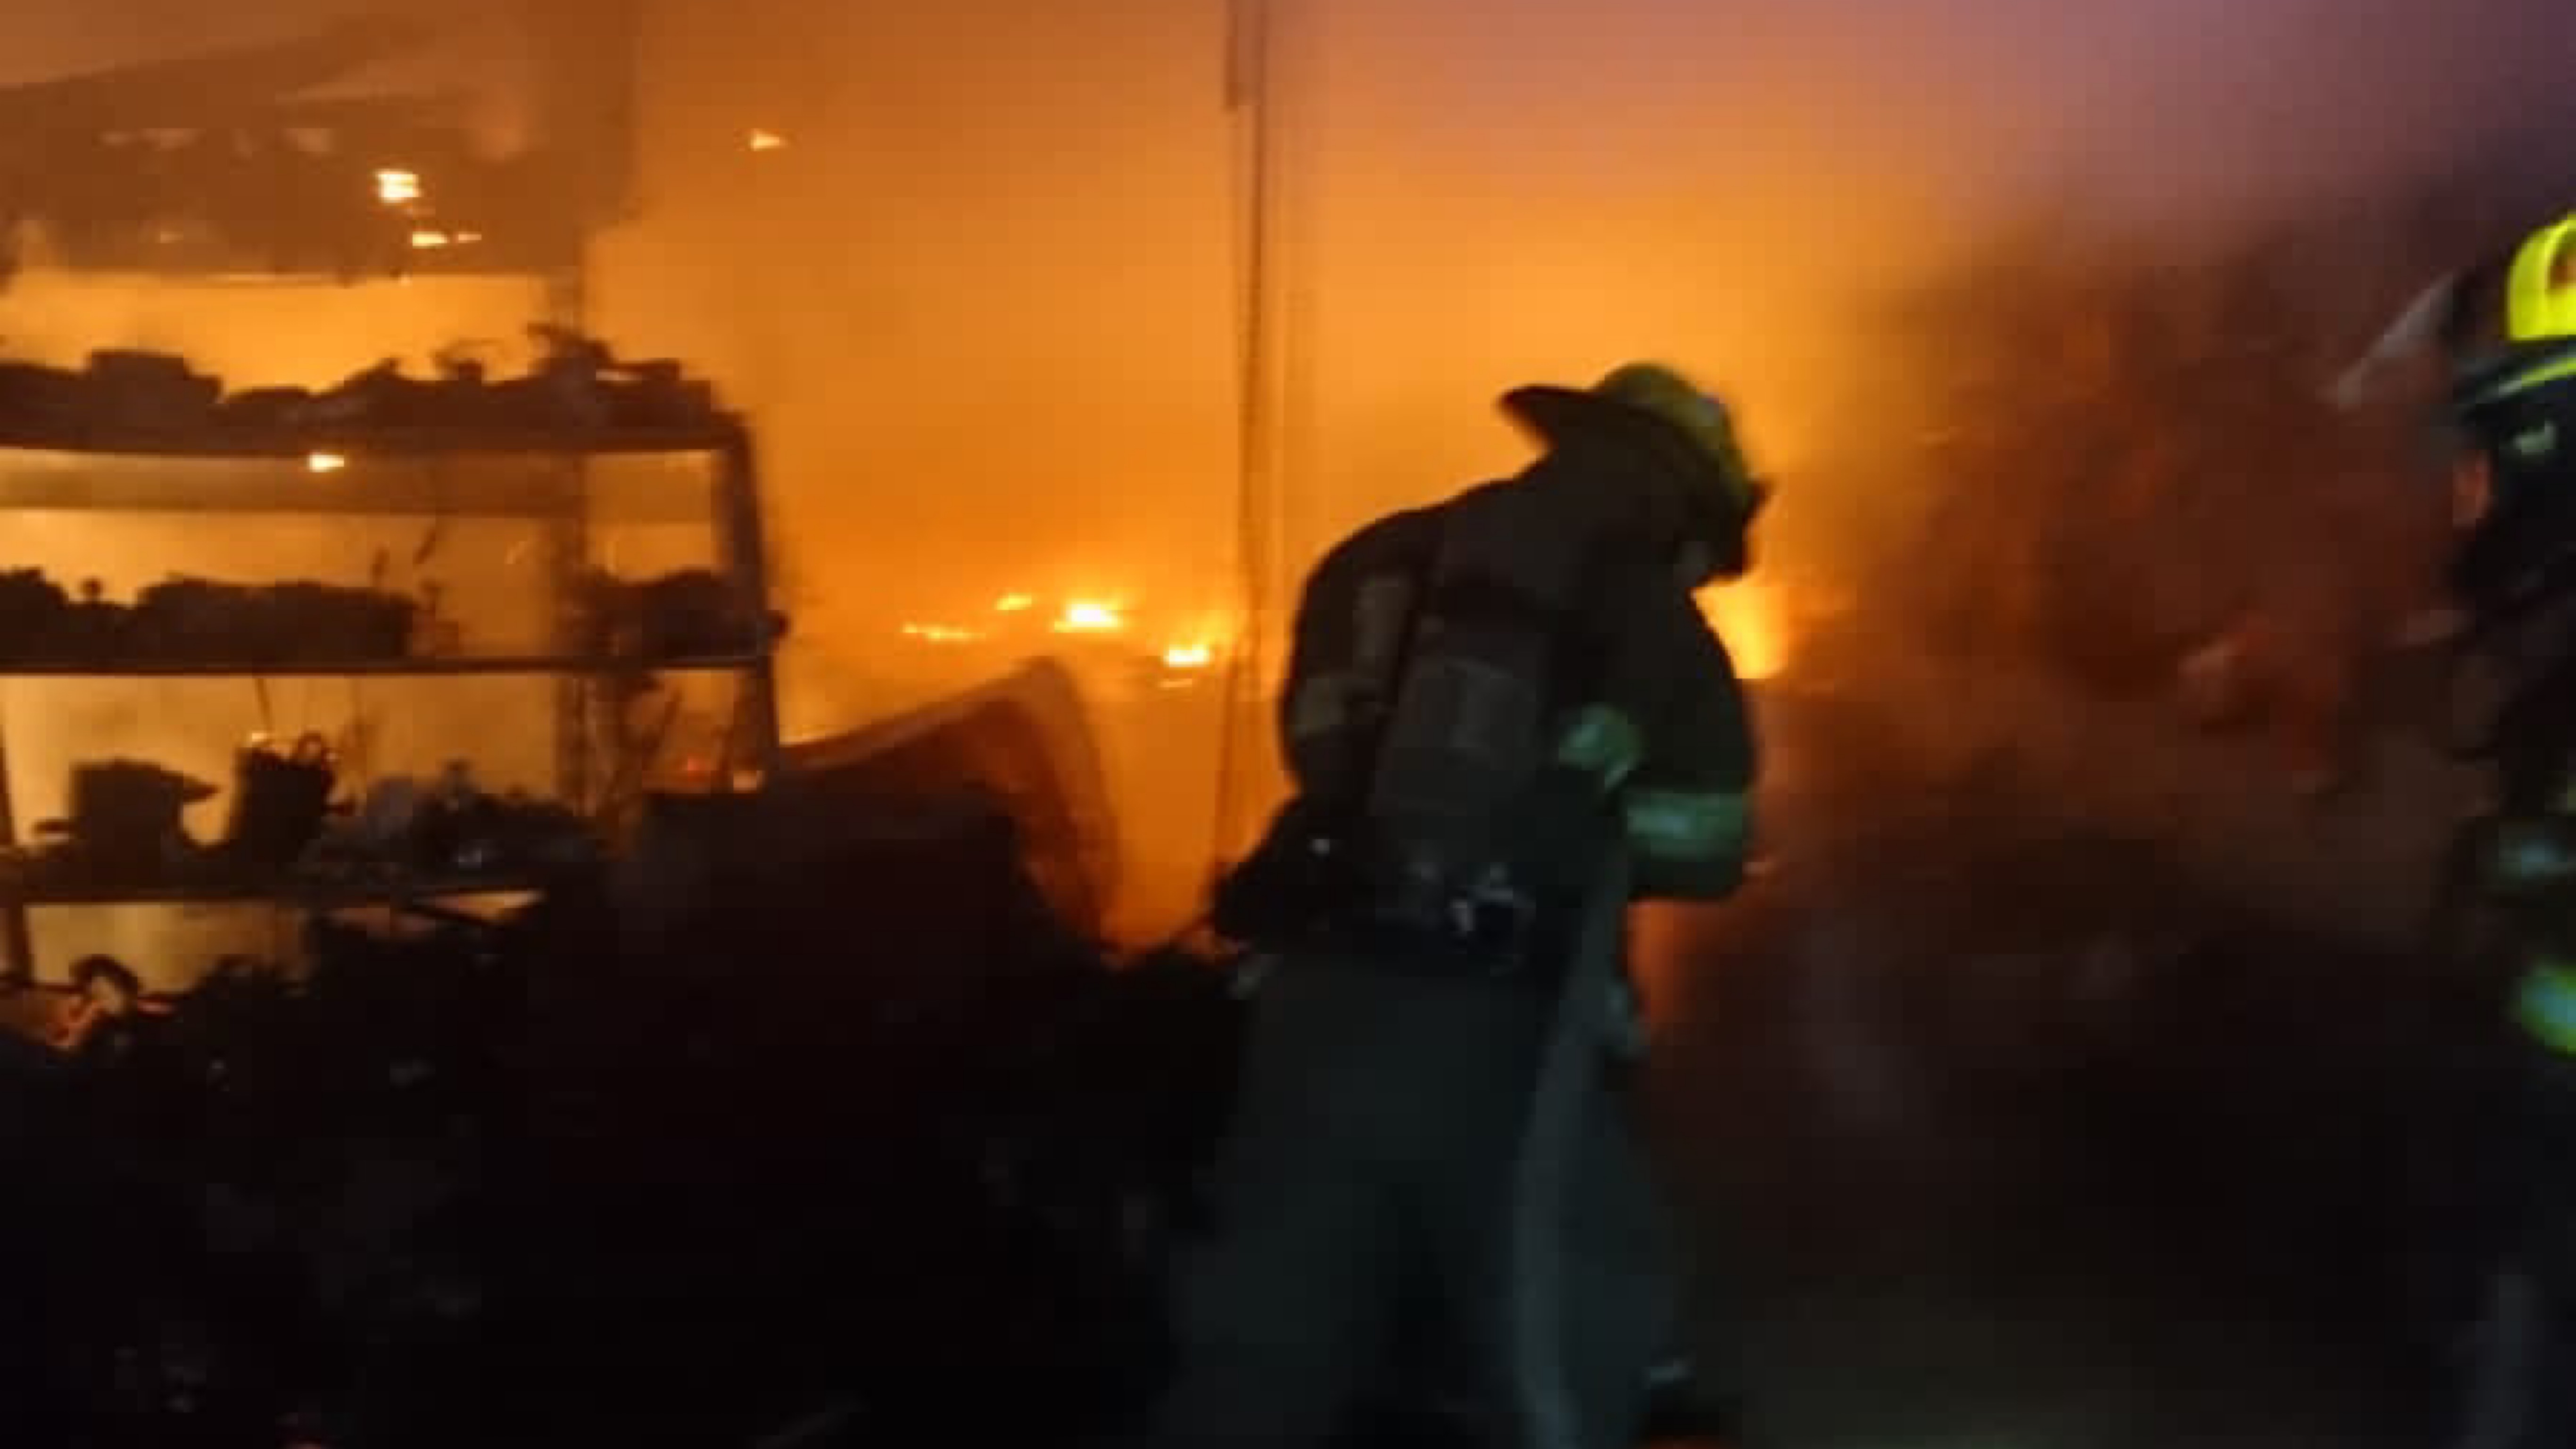 Incendios en yonkes de manera intencional en Juarez